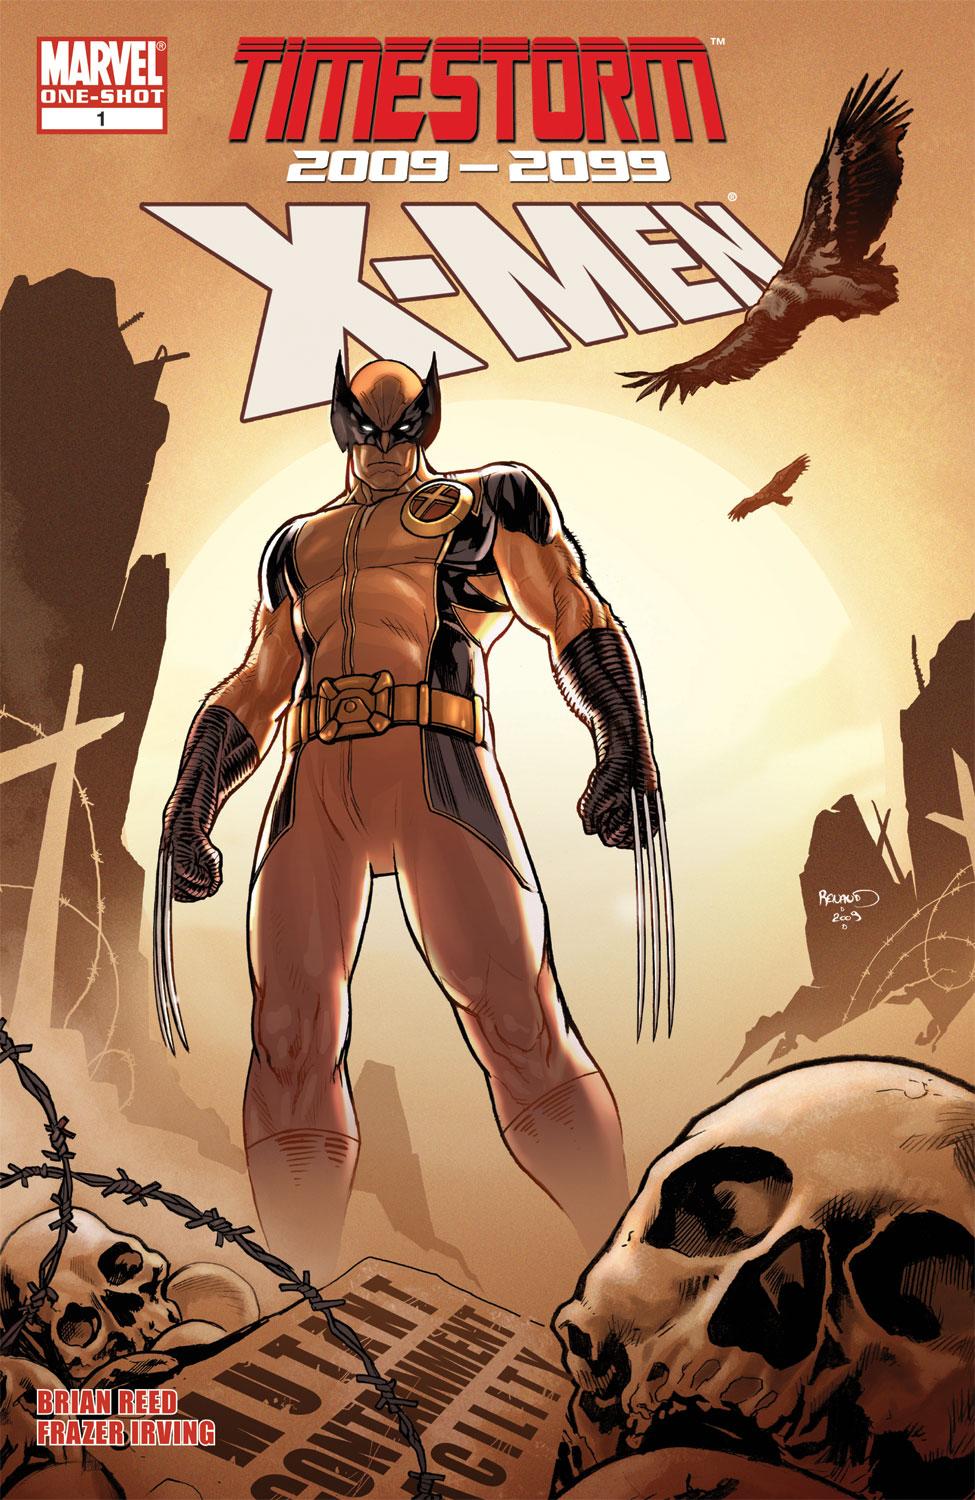 Timestorm 2009/2099: X-Men (2009) #1